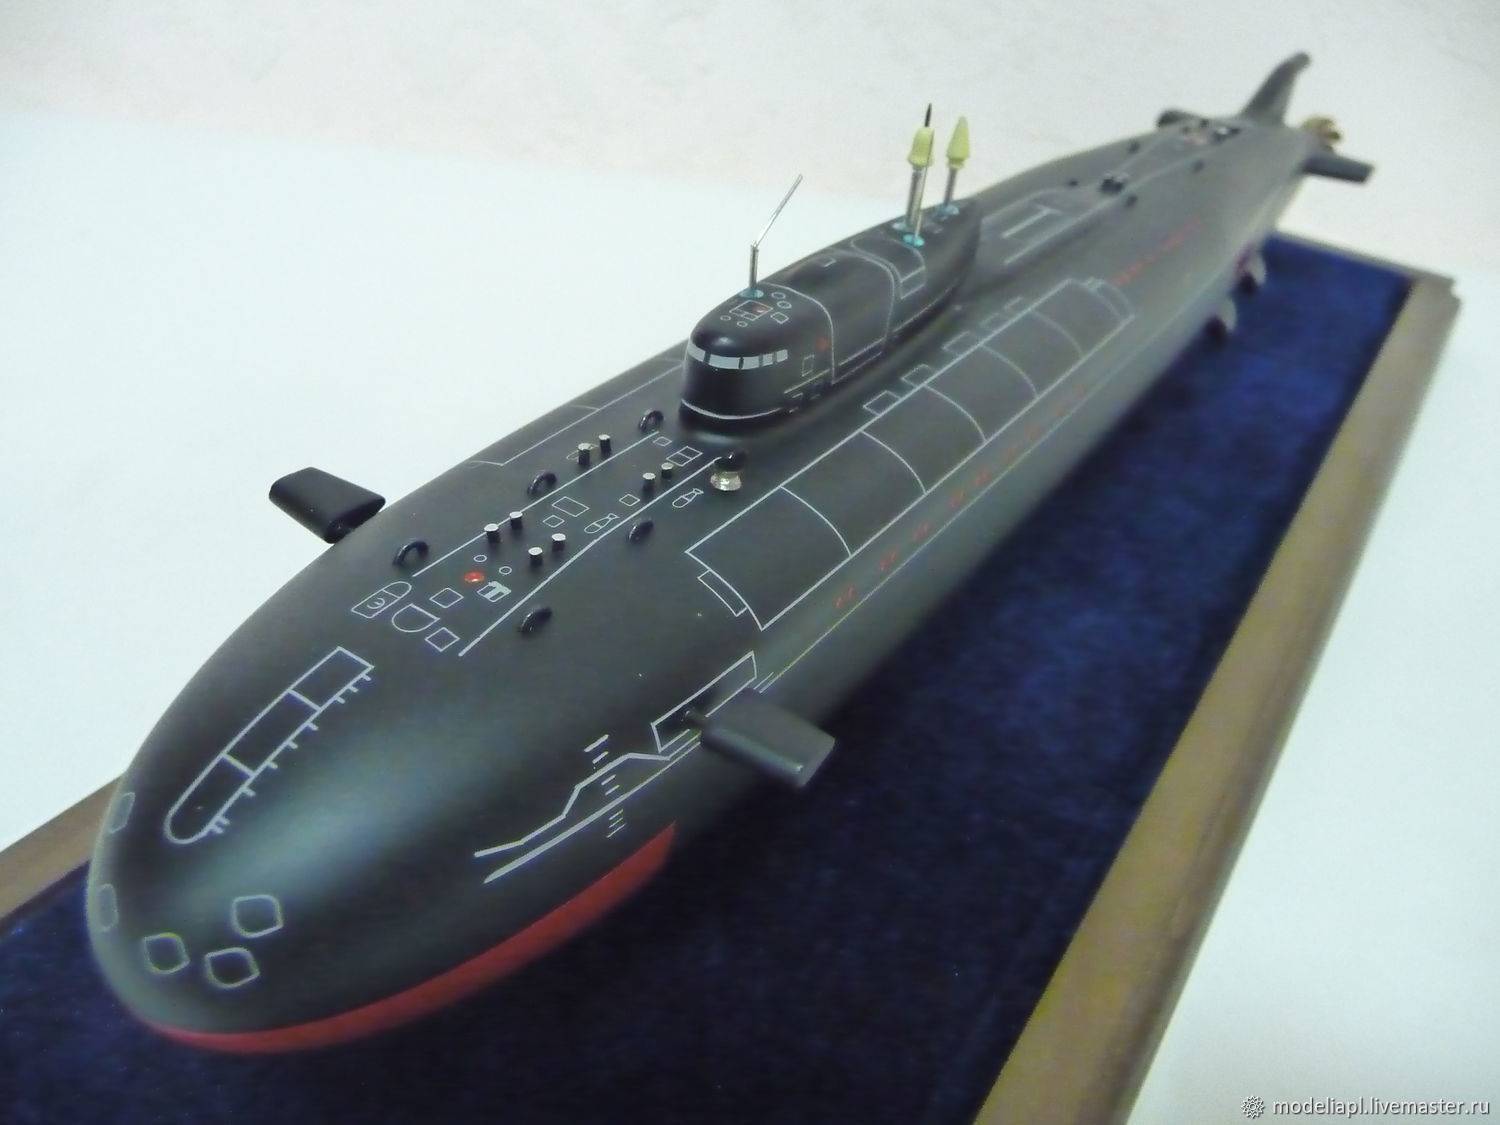 Подводные лодки типа антей. апл пр.949а "антей" будут достроены и модернизированы. главные размерения, м